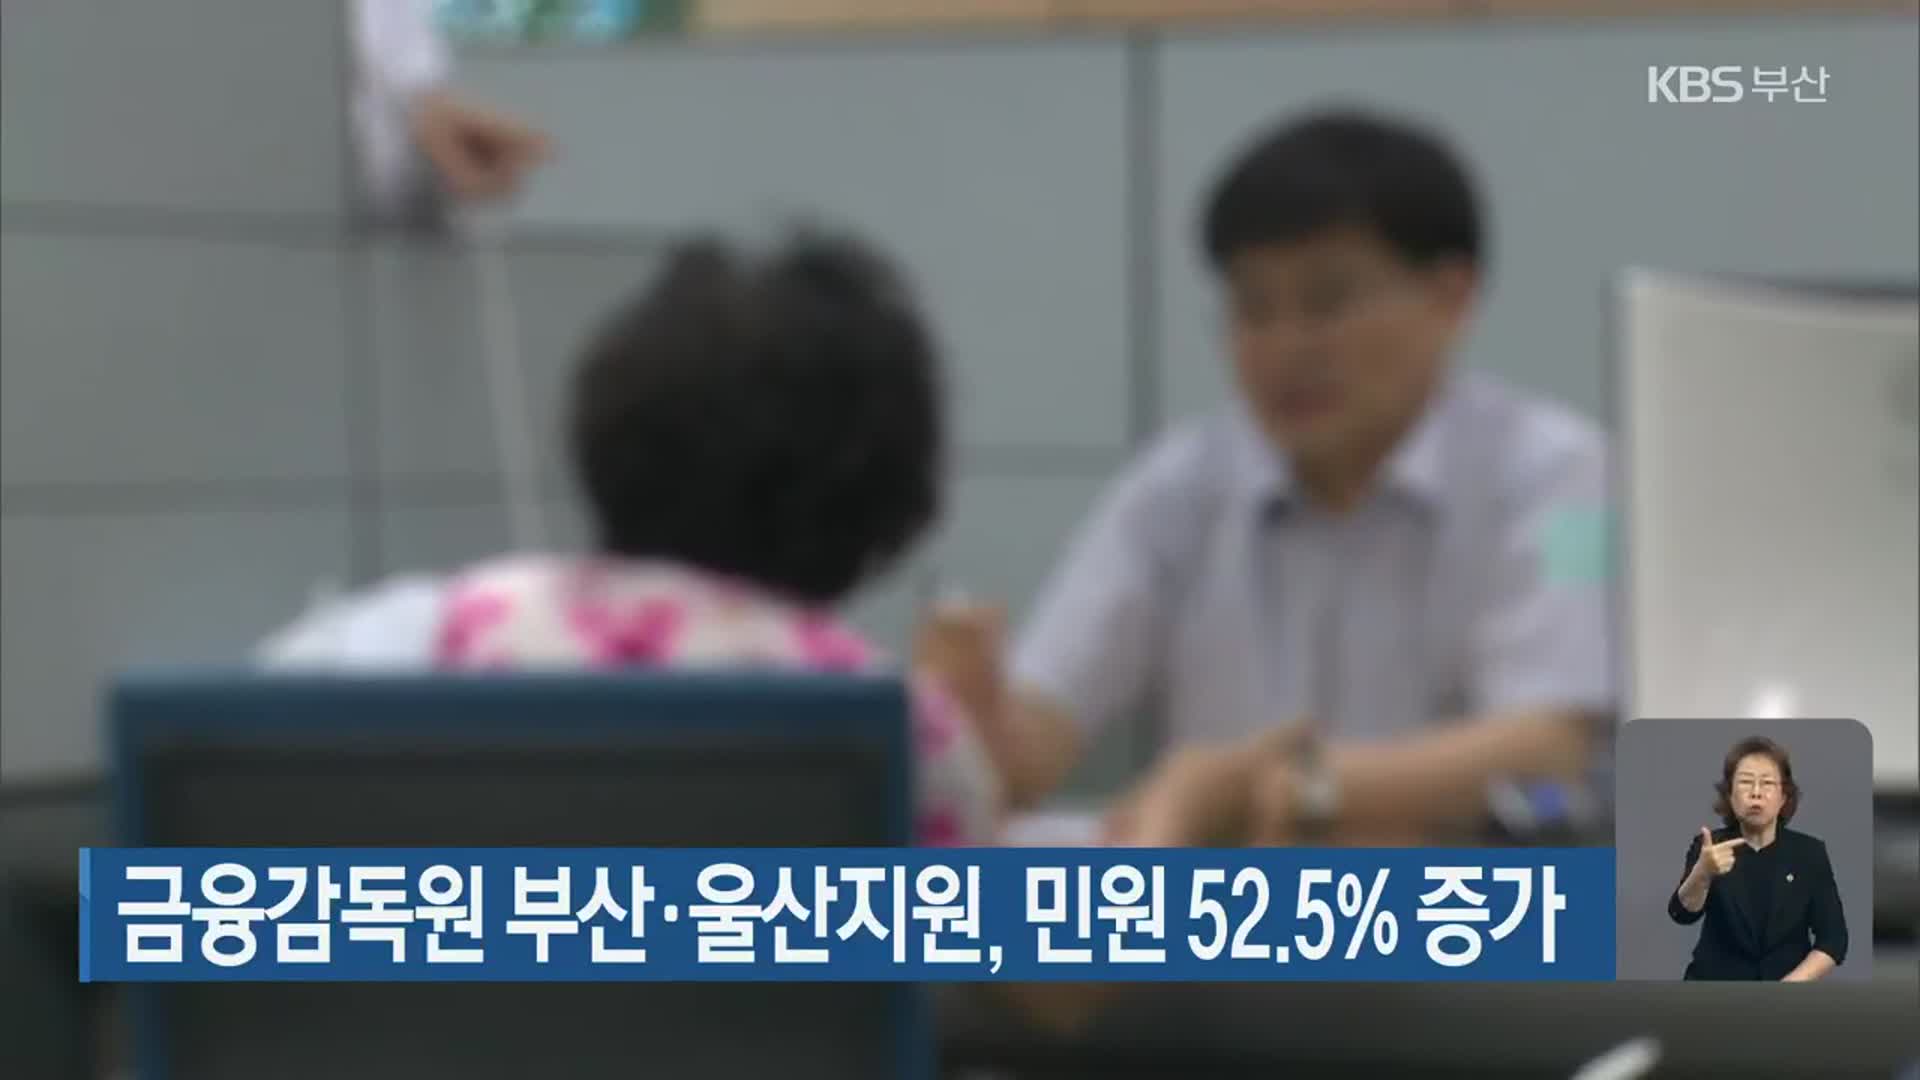 금융감독원 부산·울산지원, 민원 52.5% 증가